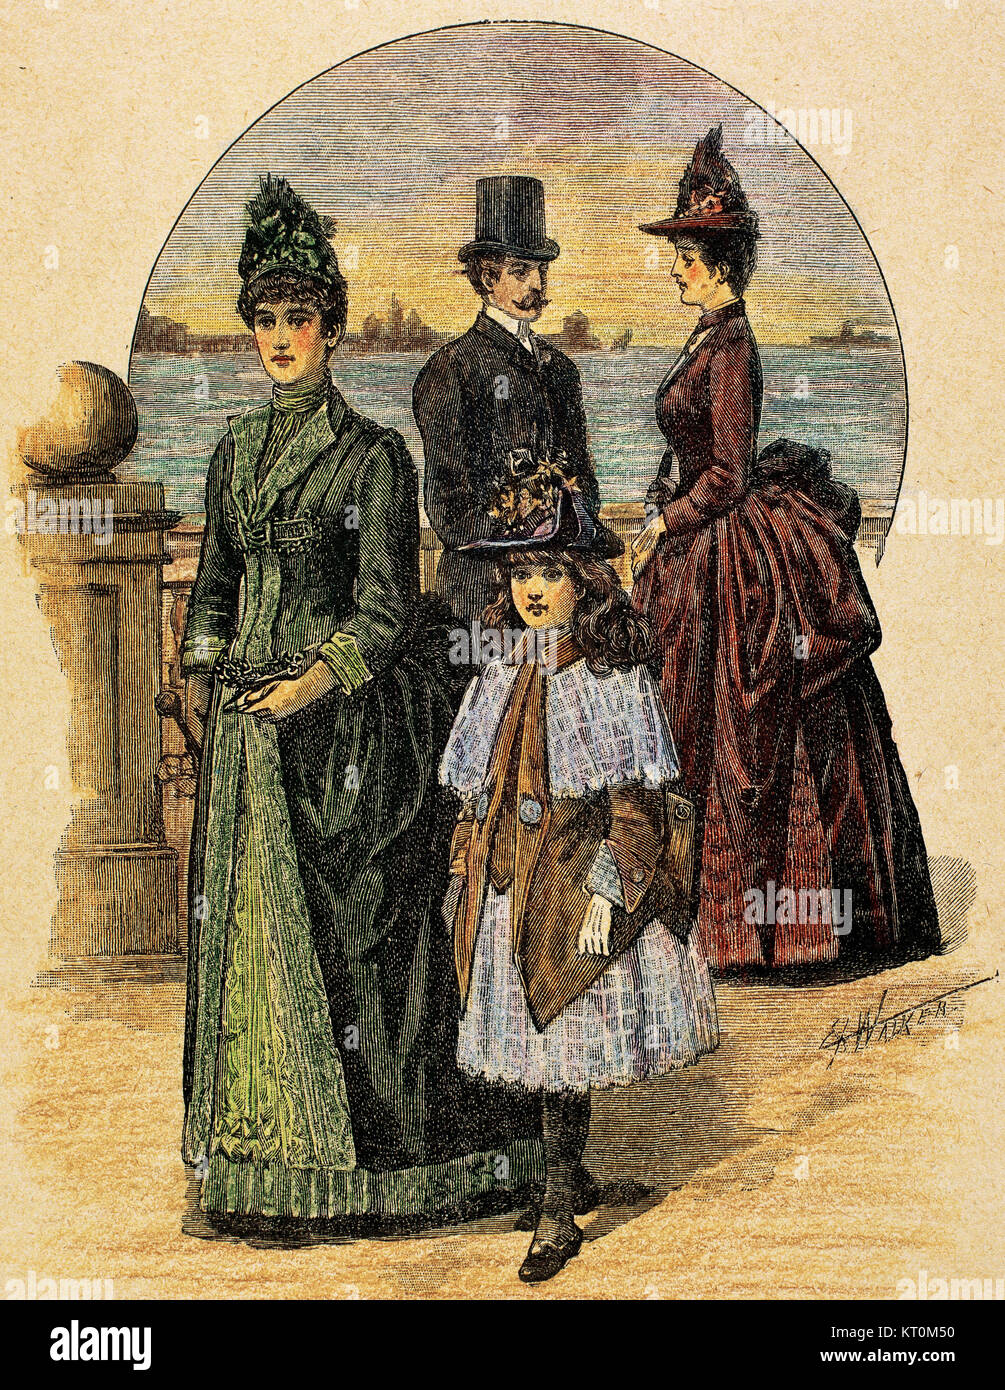 Bourgeoisie. Wandern. Kupferstich, koloriert, 1870. Stockfoto